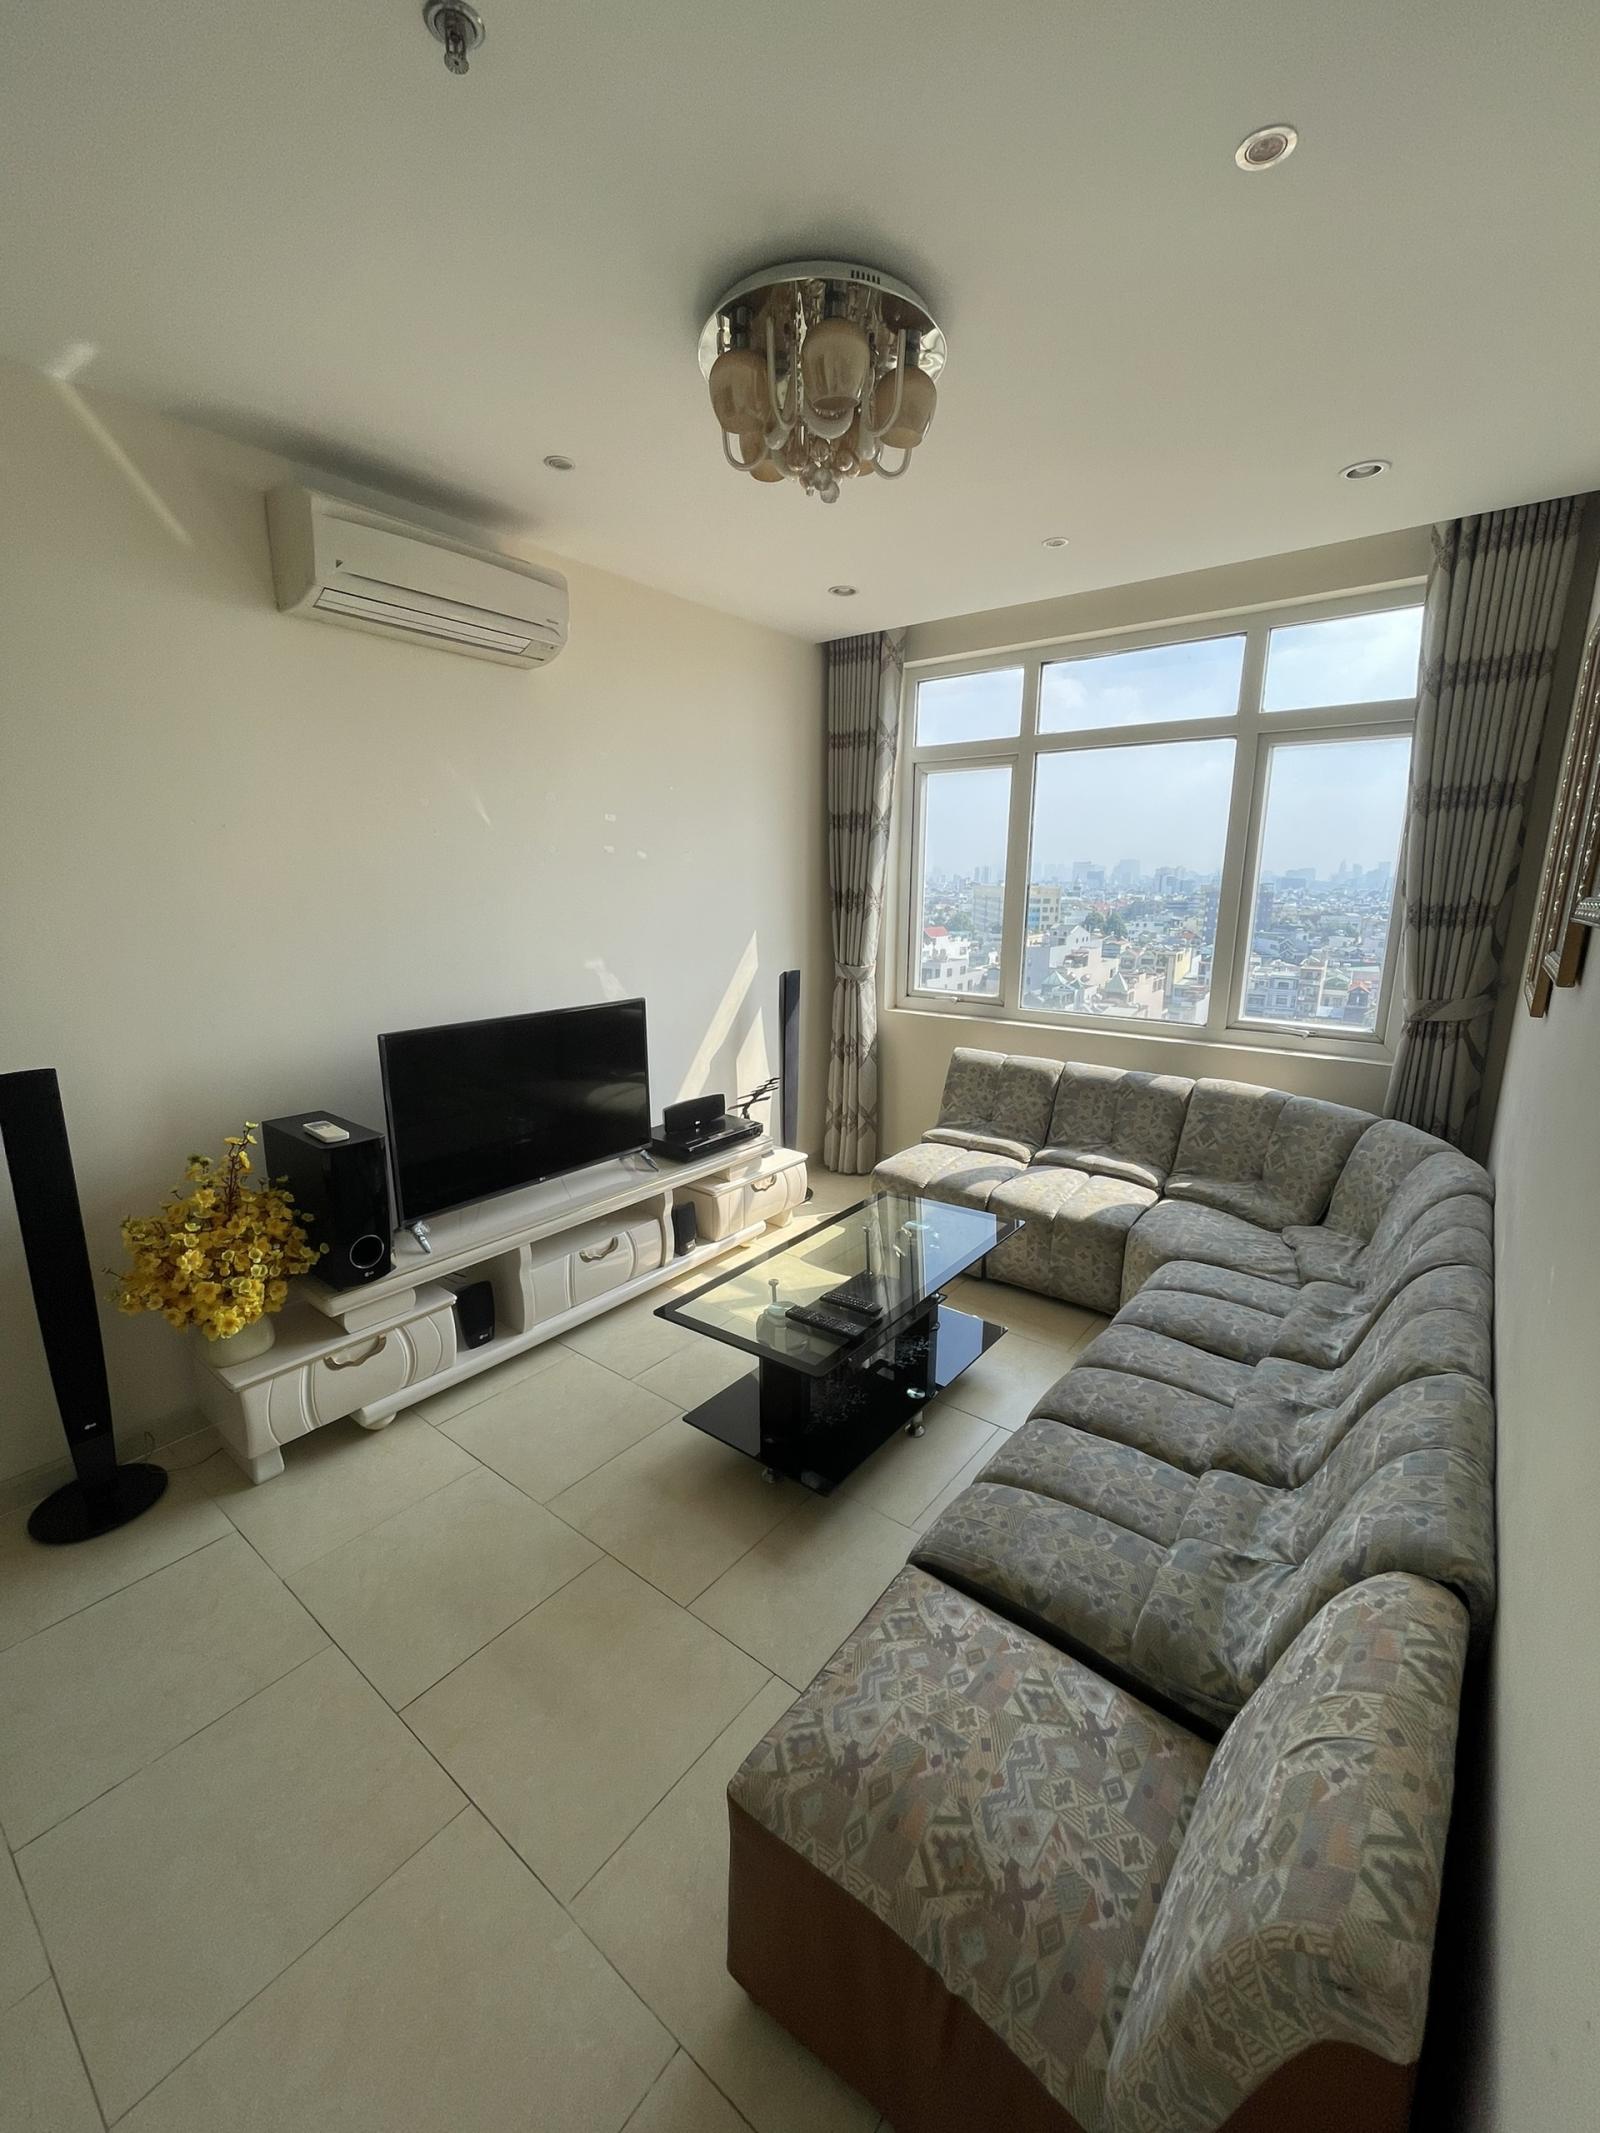 Cho thuê căn hộ chung cư Bảy Hiền Tower ,70m2 2PN 2WC đầy đủ nội thất đẹp, Giá cực rẻ 